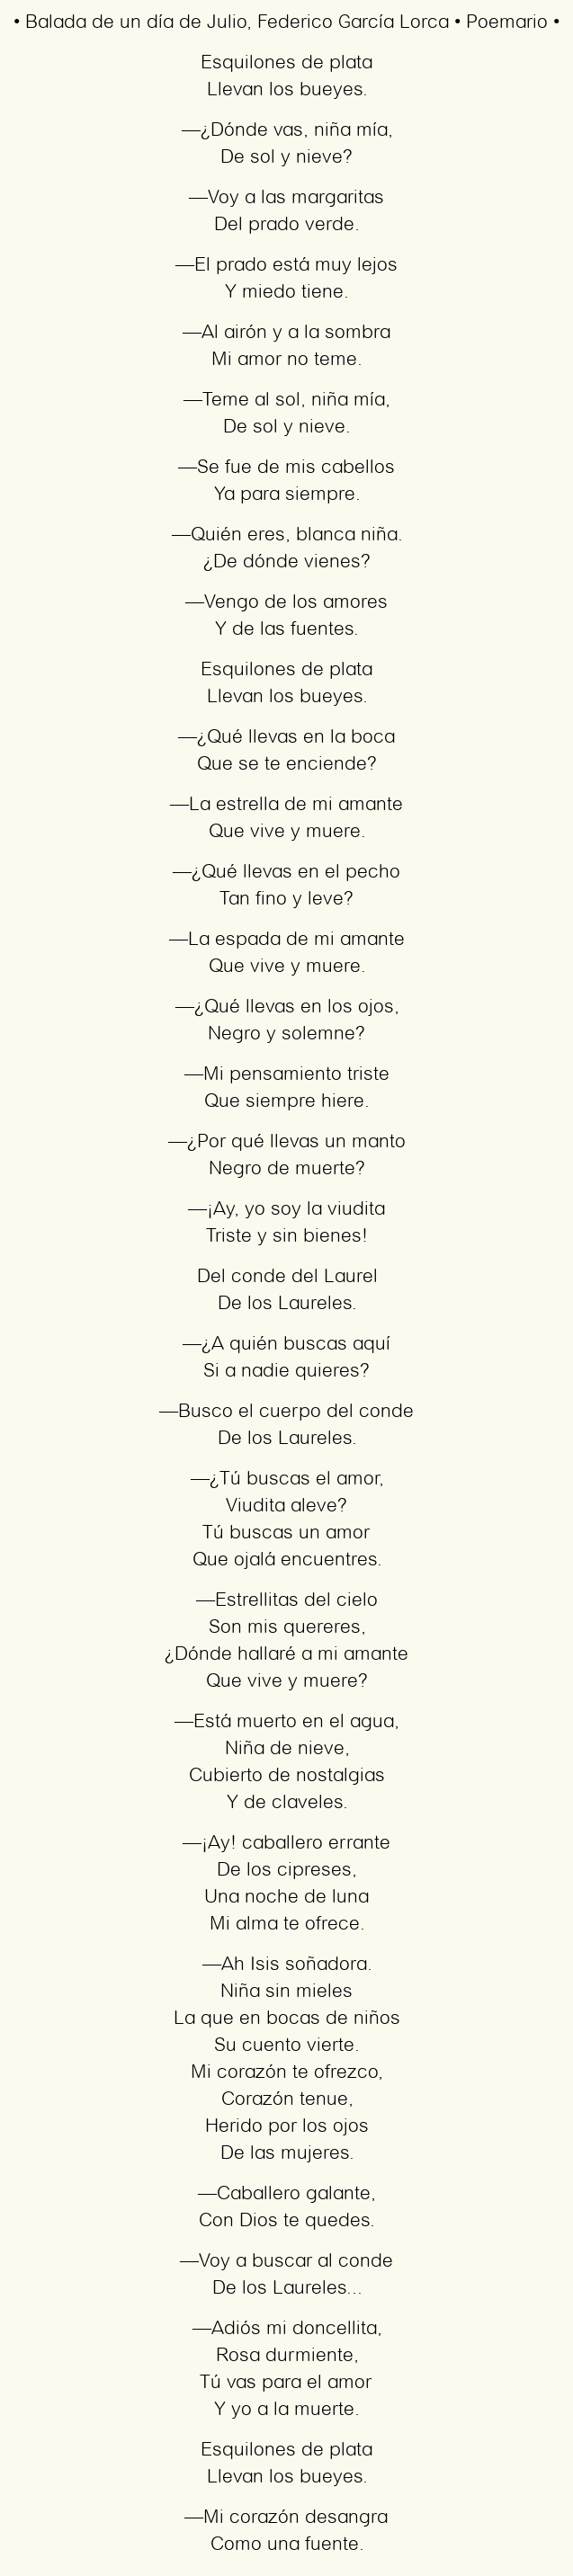 Imagen con el poema Balada de un día de Julio, por Federico García Lorca